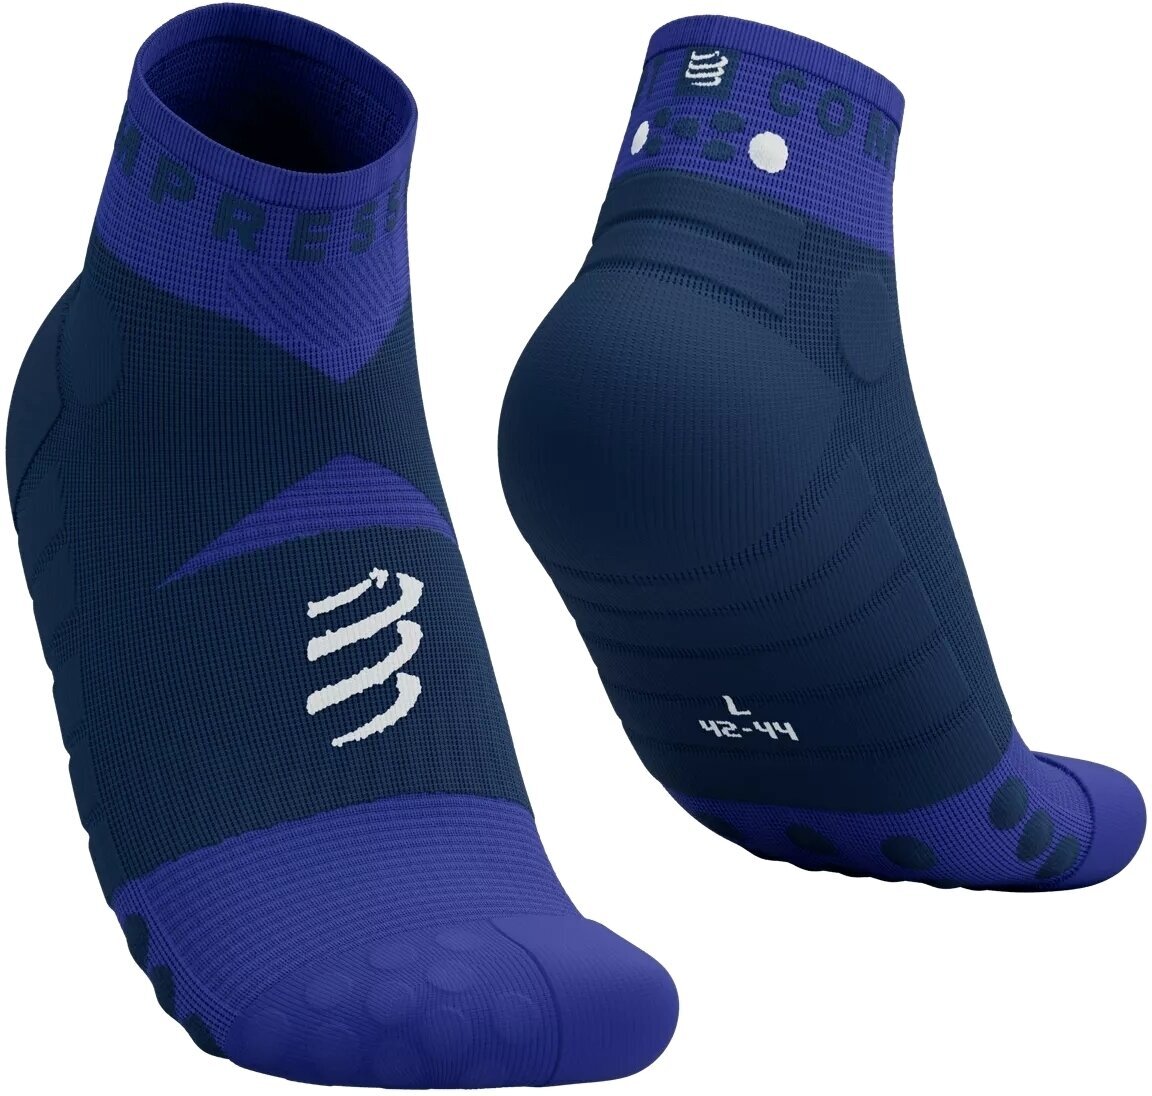 Běžecké ponožky
 Compressport Ultra Trail Low Socks Dazzling Blue/Dress Blues/White T2 Běžecké ponožky